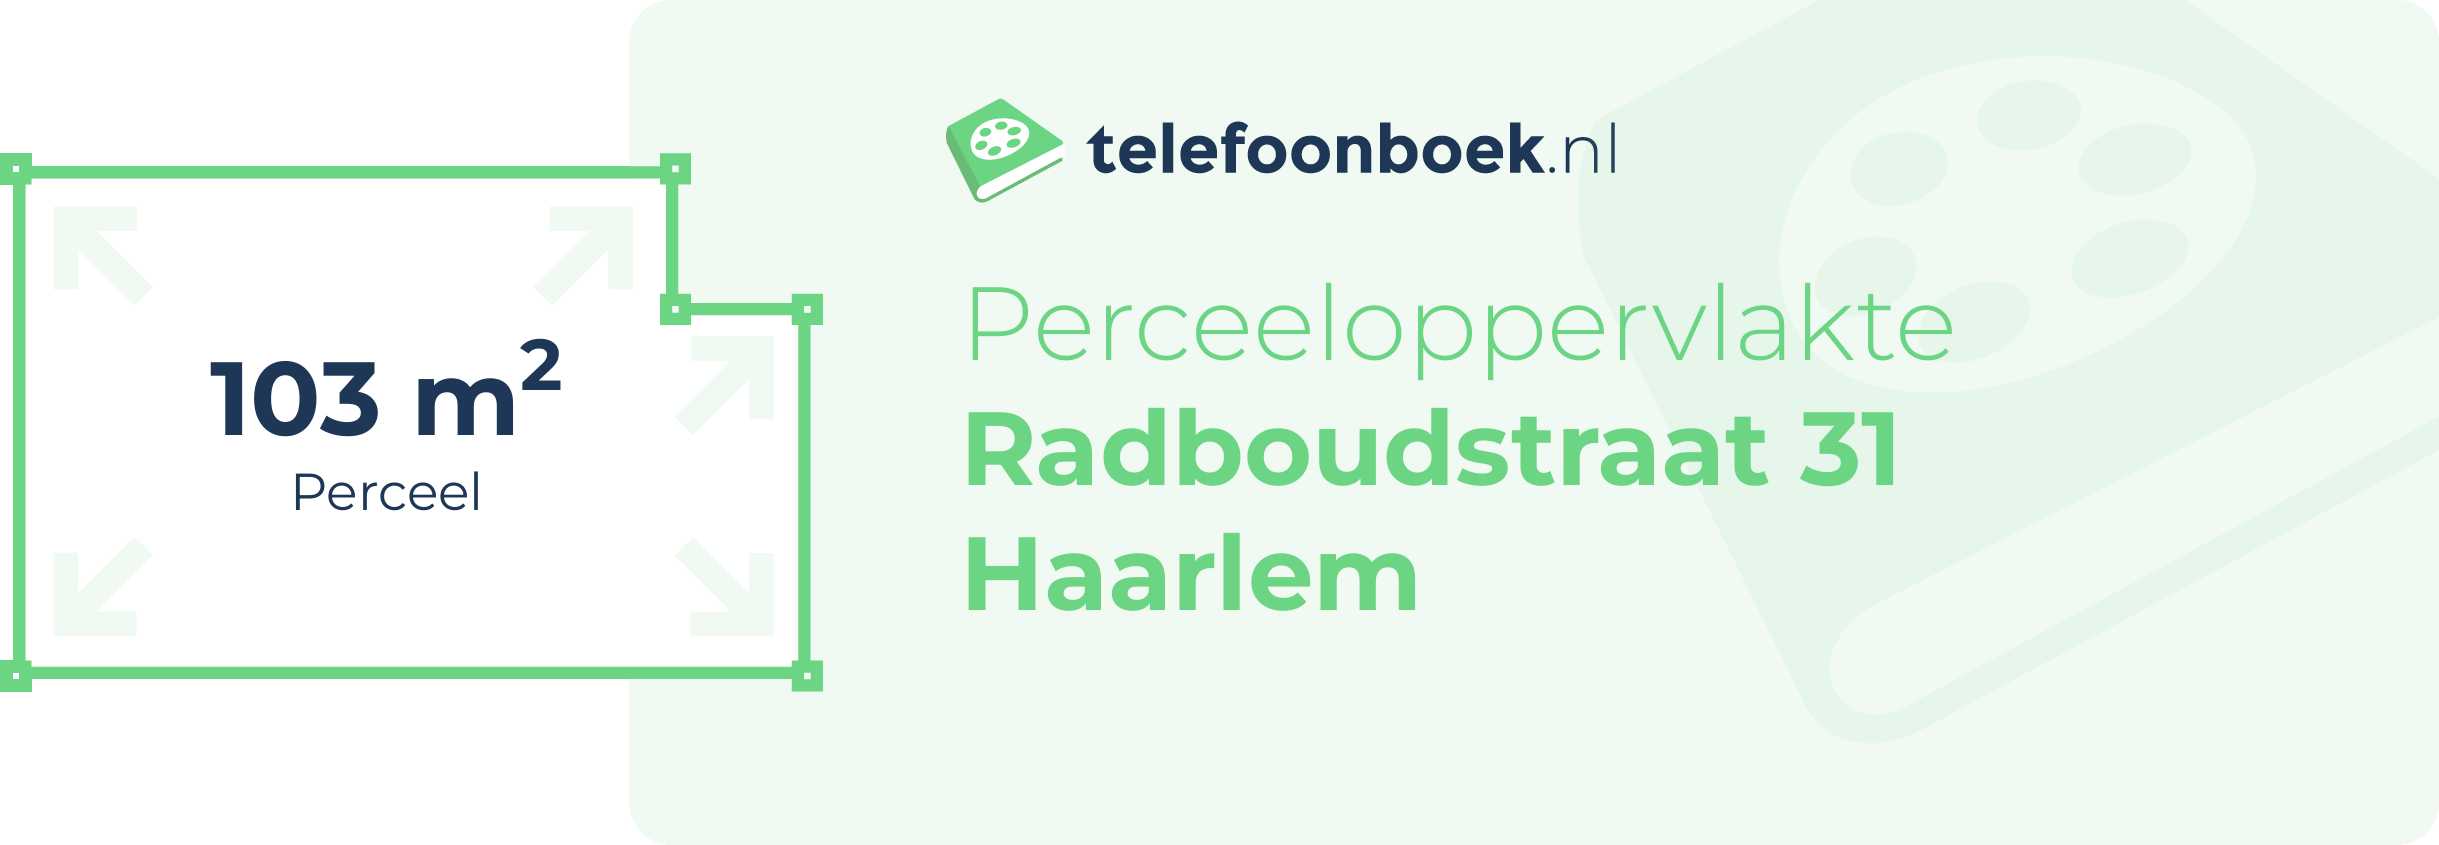 Perceeloppervlakte Radboudstraat 31 Haarlem